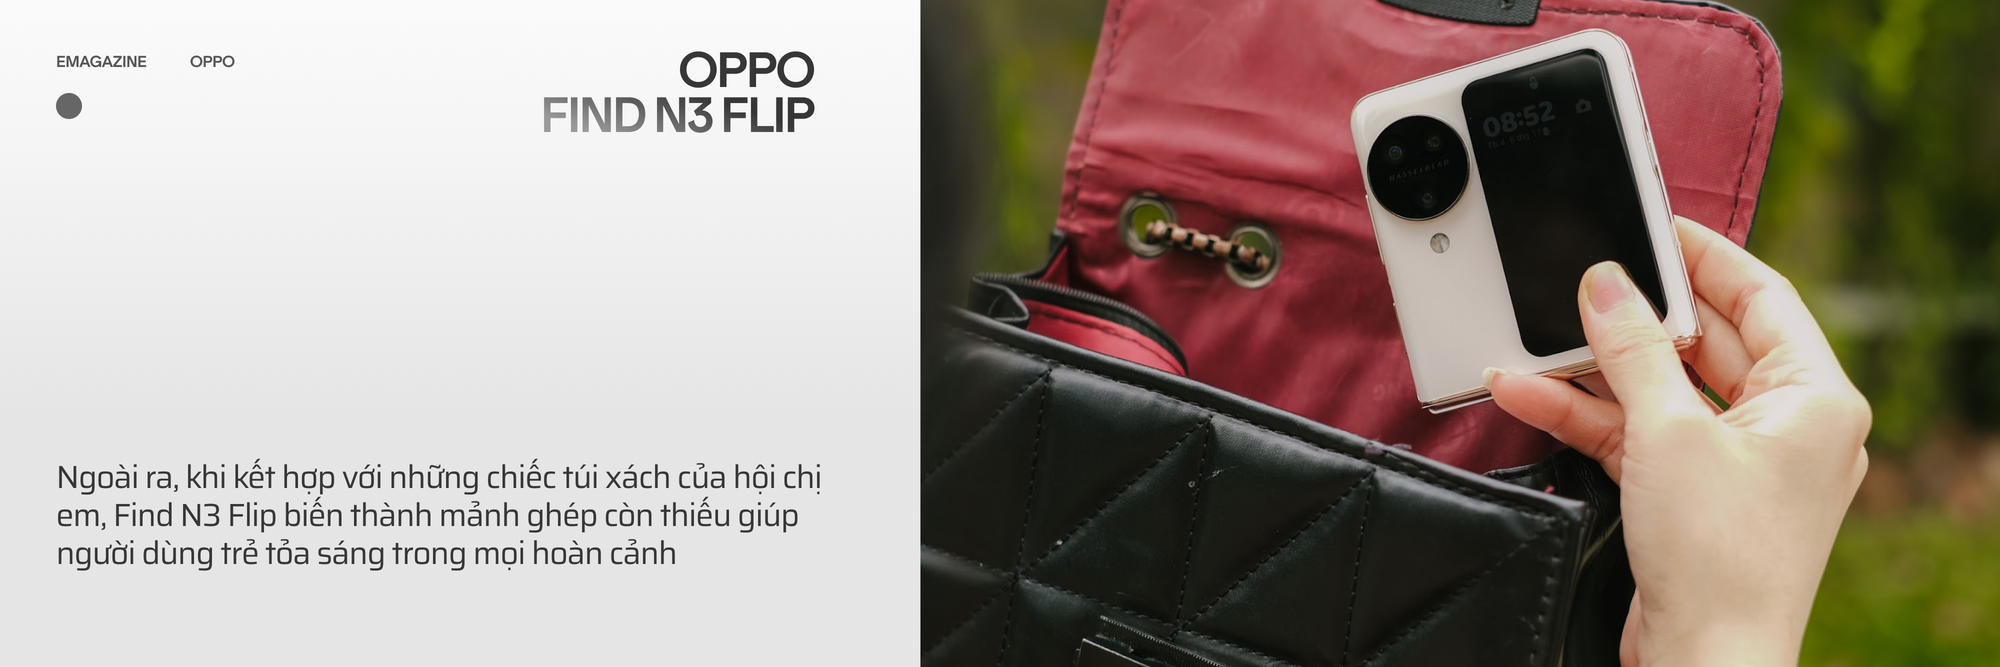 OPPO Find N3 Flip và hành trình đi tìm chiếc smartphone gập toàn diện - Ảnh 7.